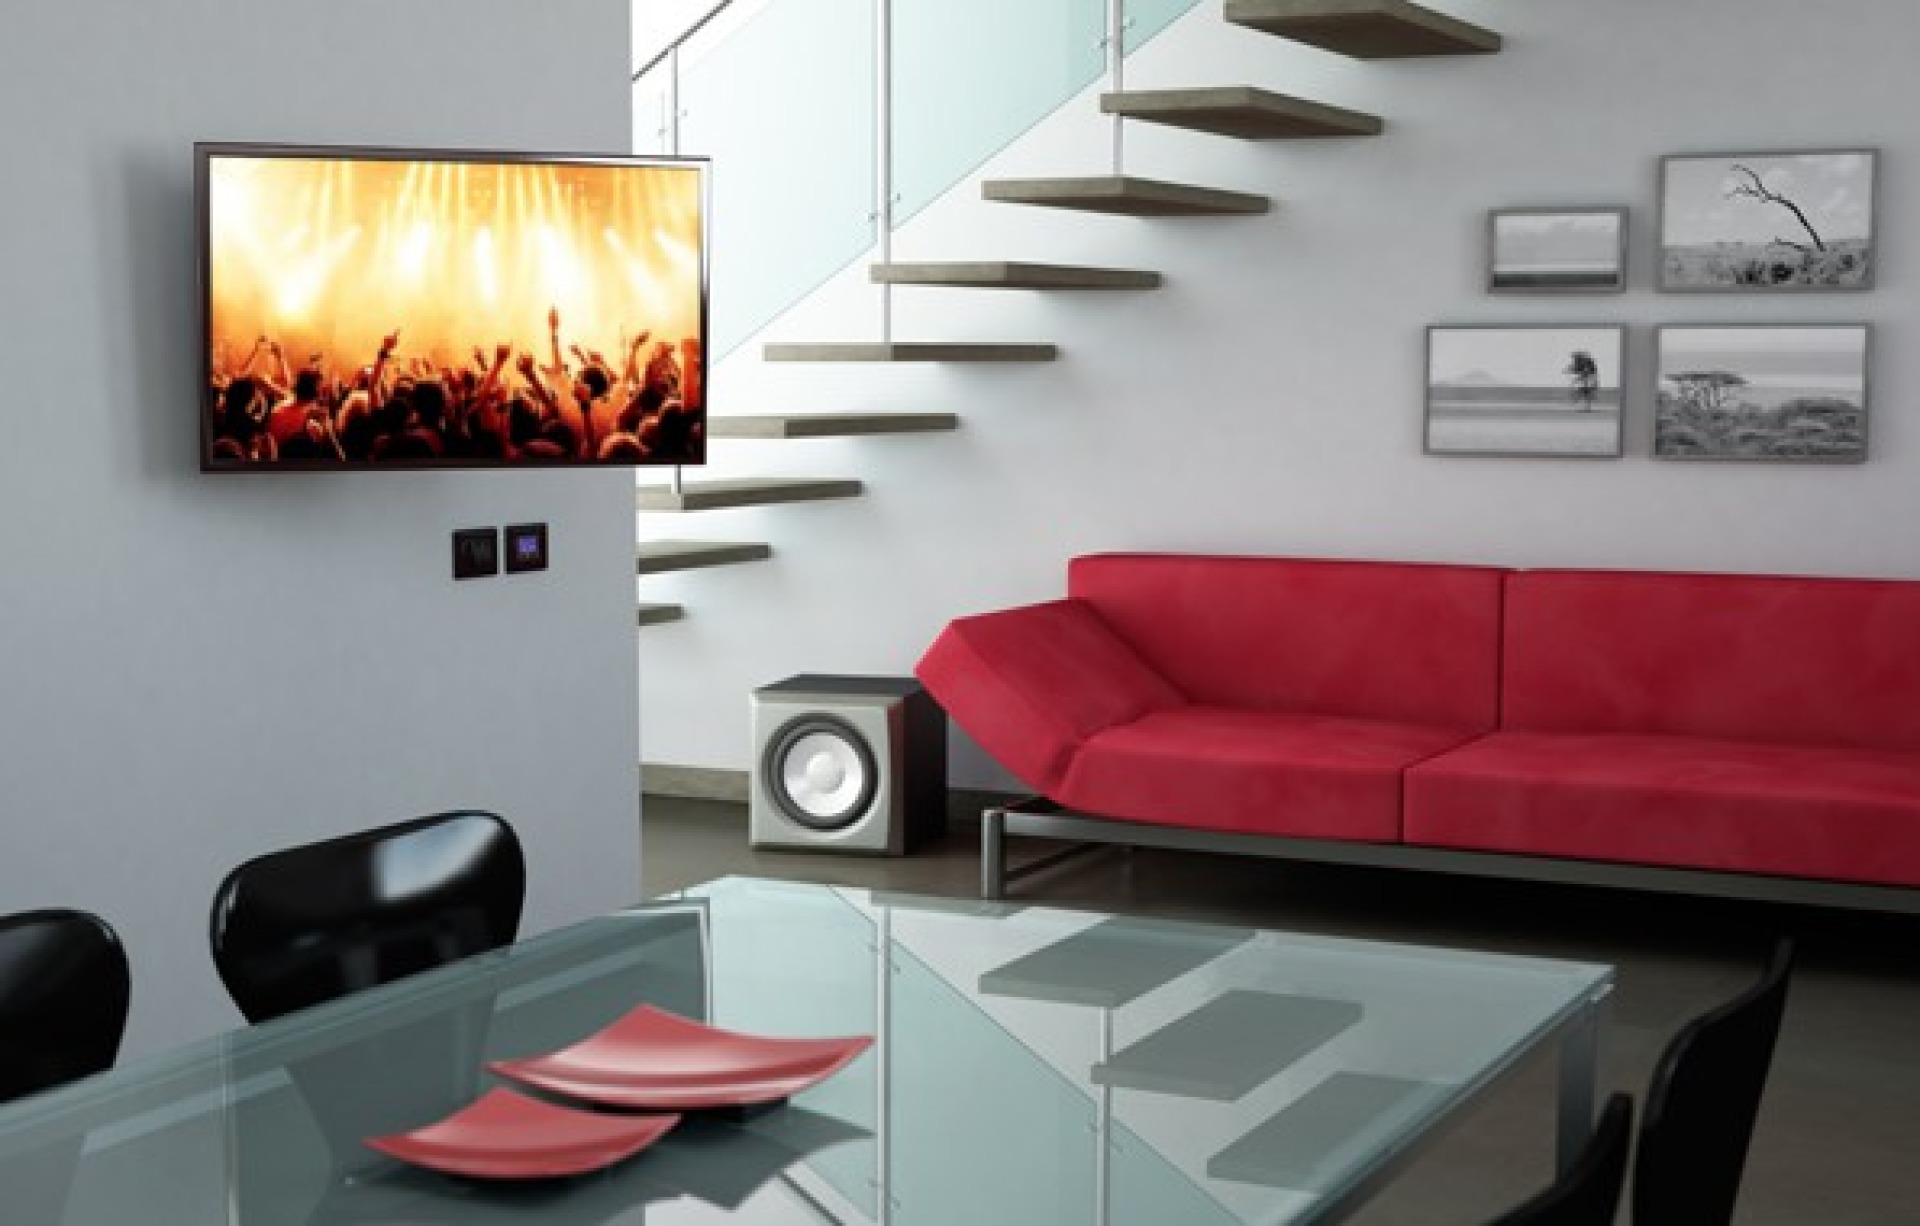 Wall bracket for LCD TV LED 15"-27" tilting swivel 2 joints, black&white